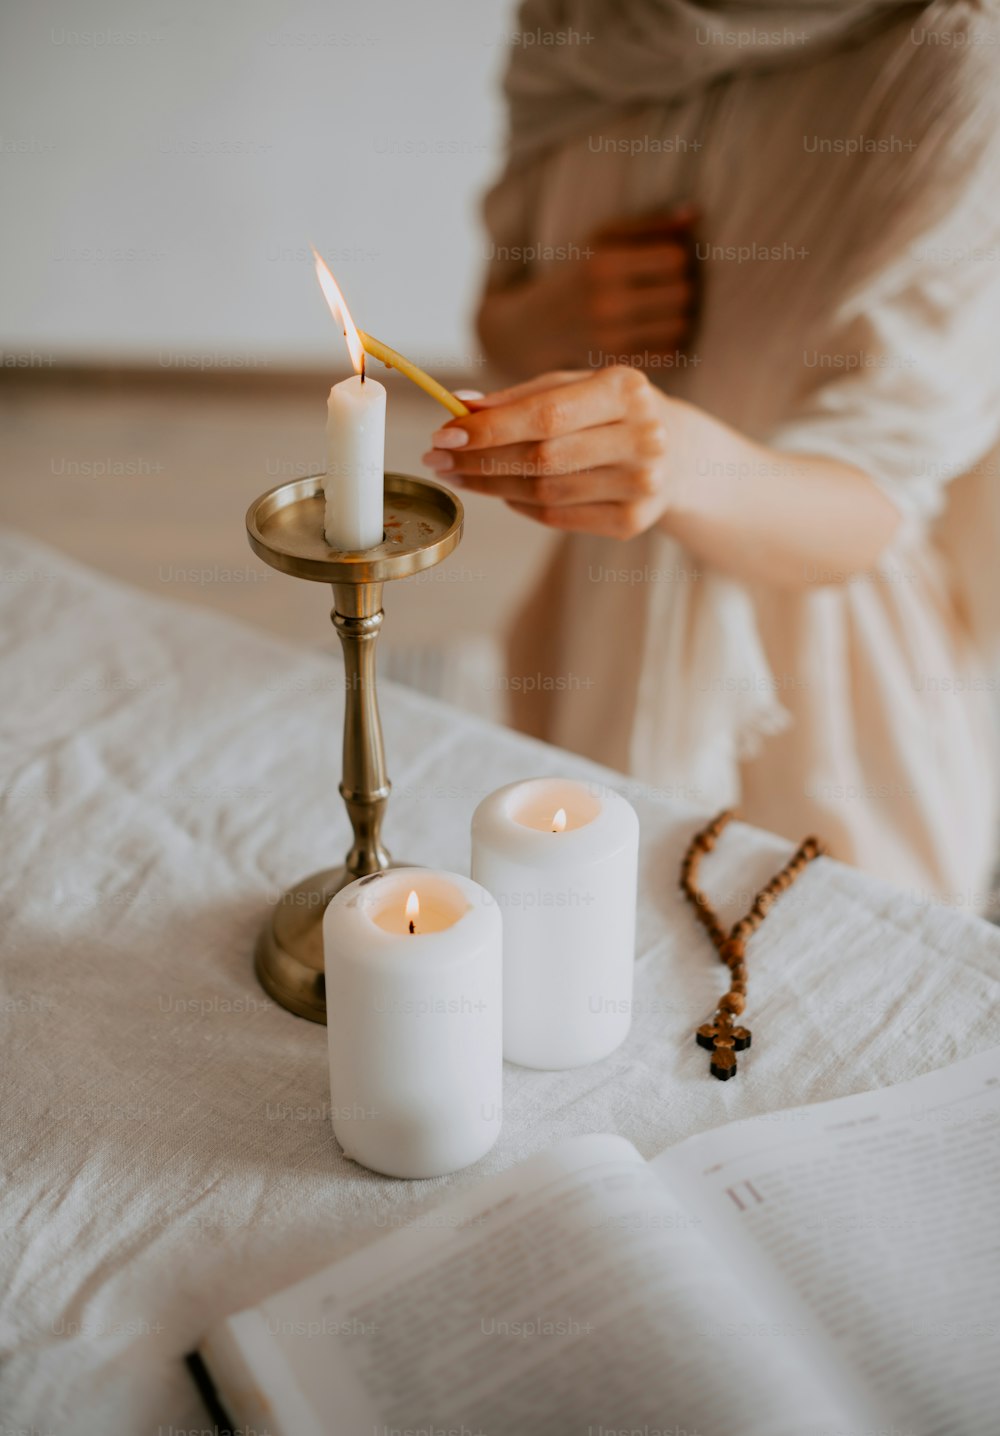 Una persona encendiendo una vela sobre una mesa